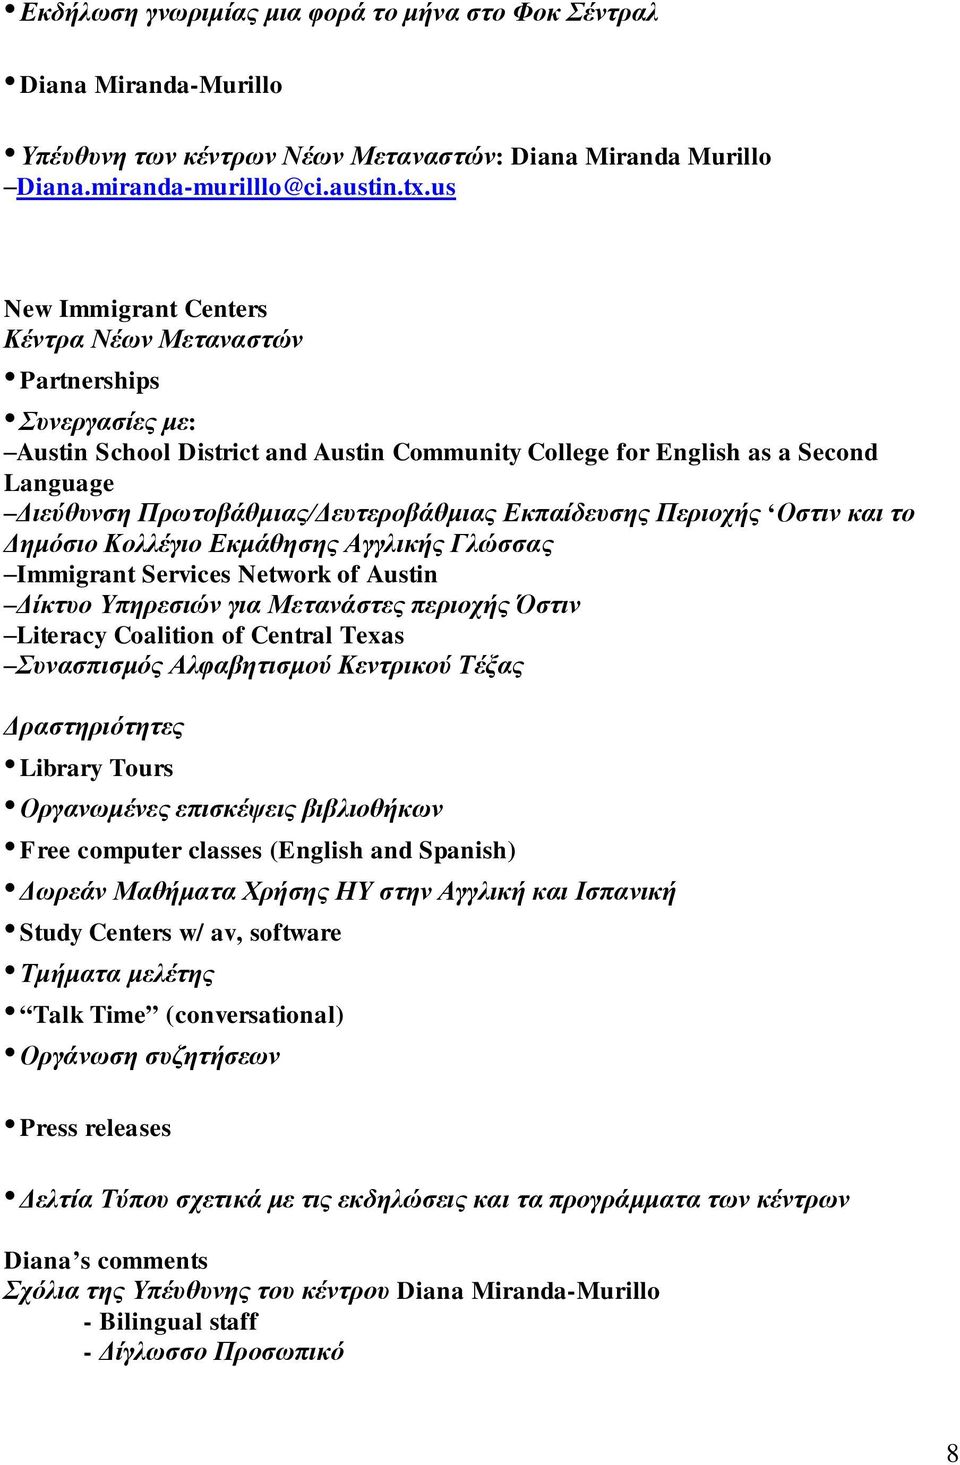 Εκπαίδευσης Περιοχής Οστιν και το Δημόσιο Κολλέγιο Εκμάθησης Αγγλικής Γλώσσας Immigrant Services Network of Austin Δίκτυο Υπηρεσιών για Μετανάστες περιοχής Όστιν Literacy Coalition of Central Texas